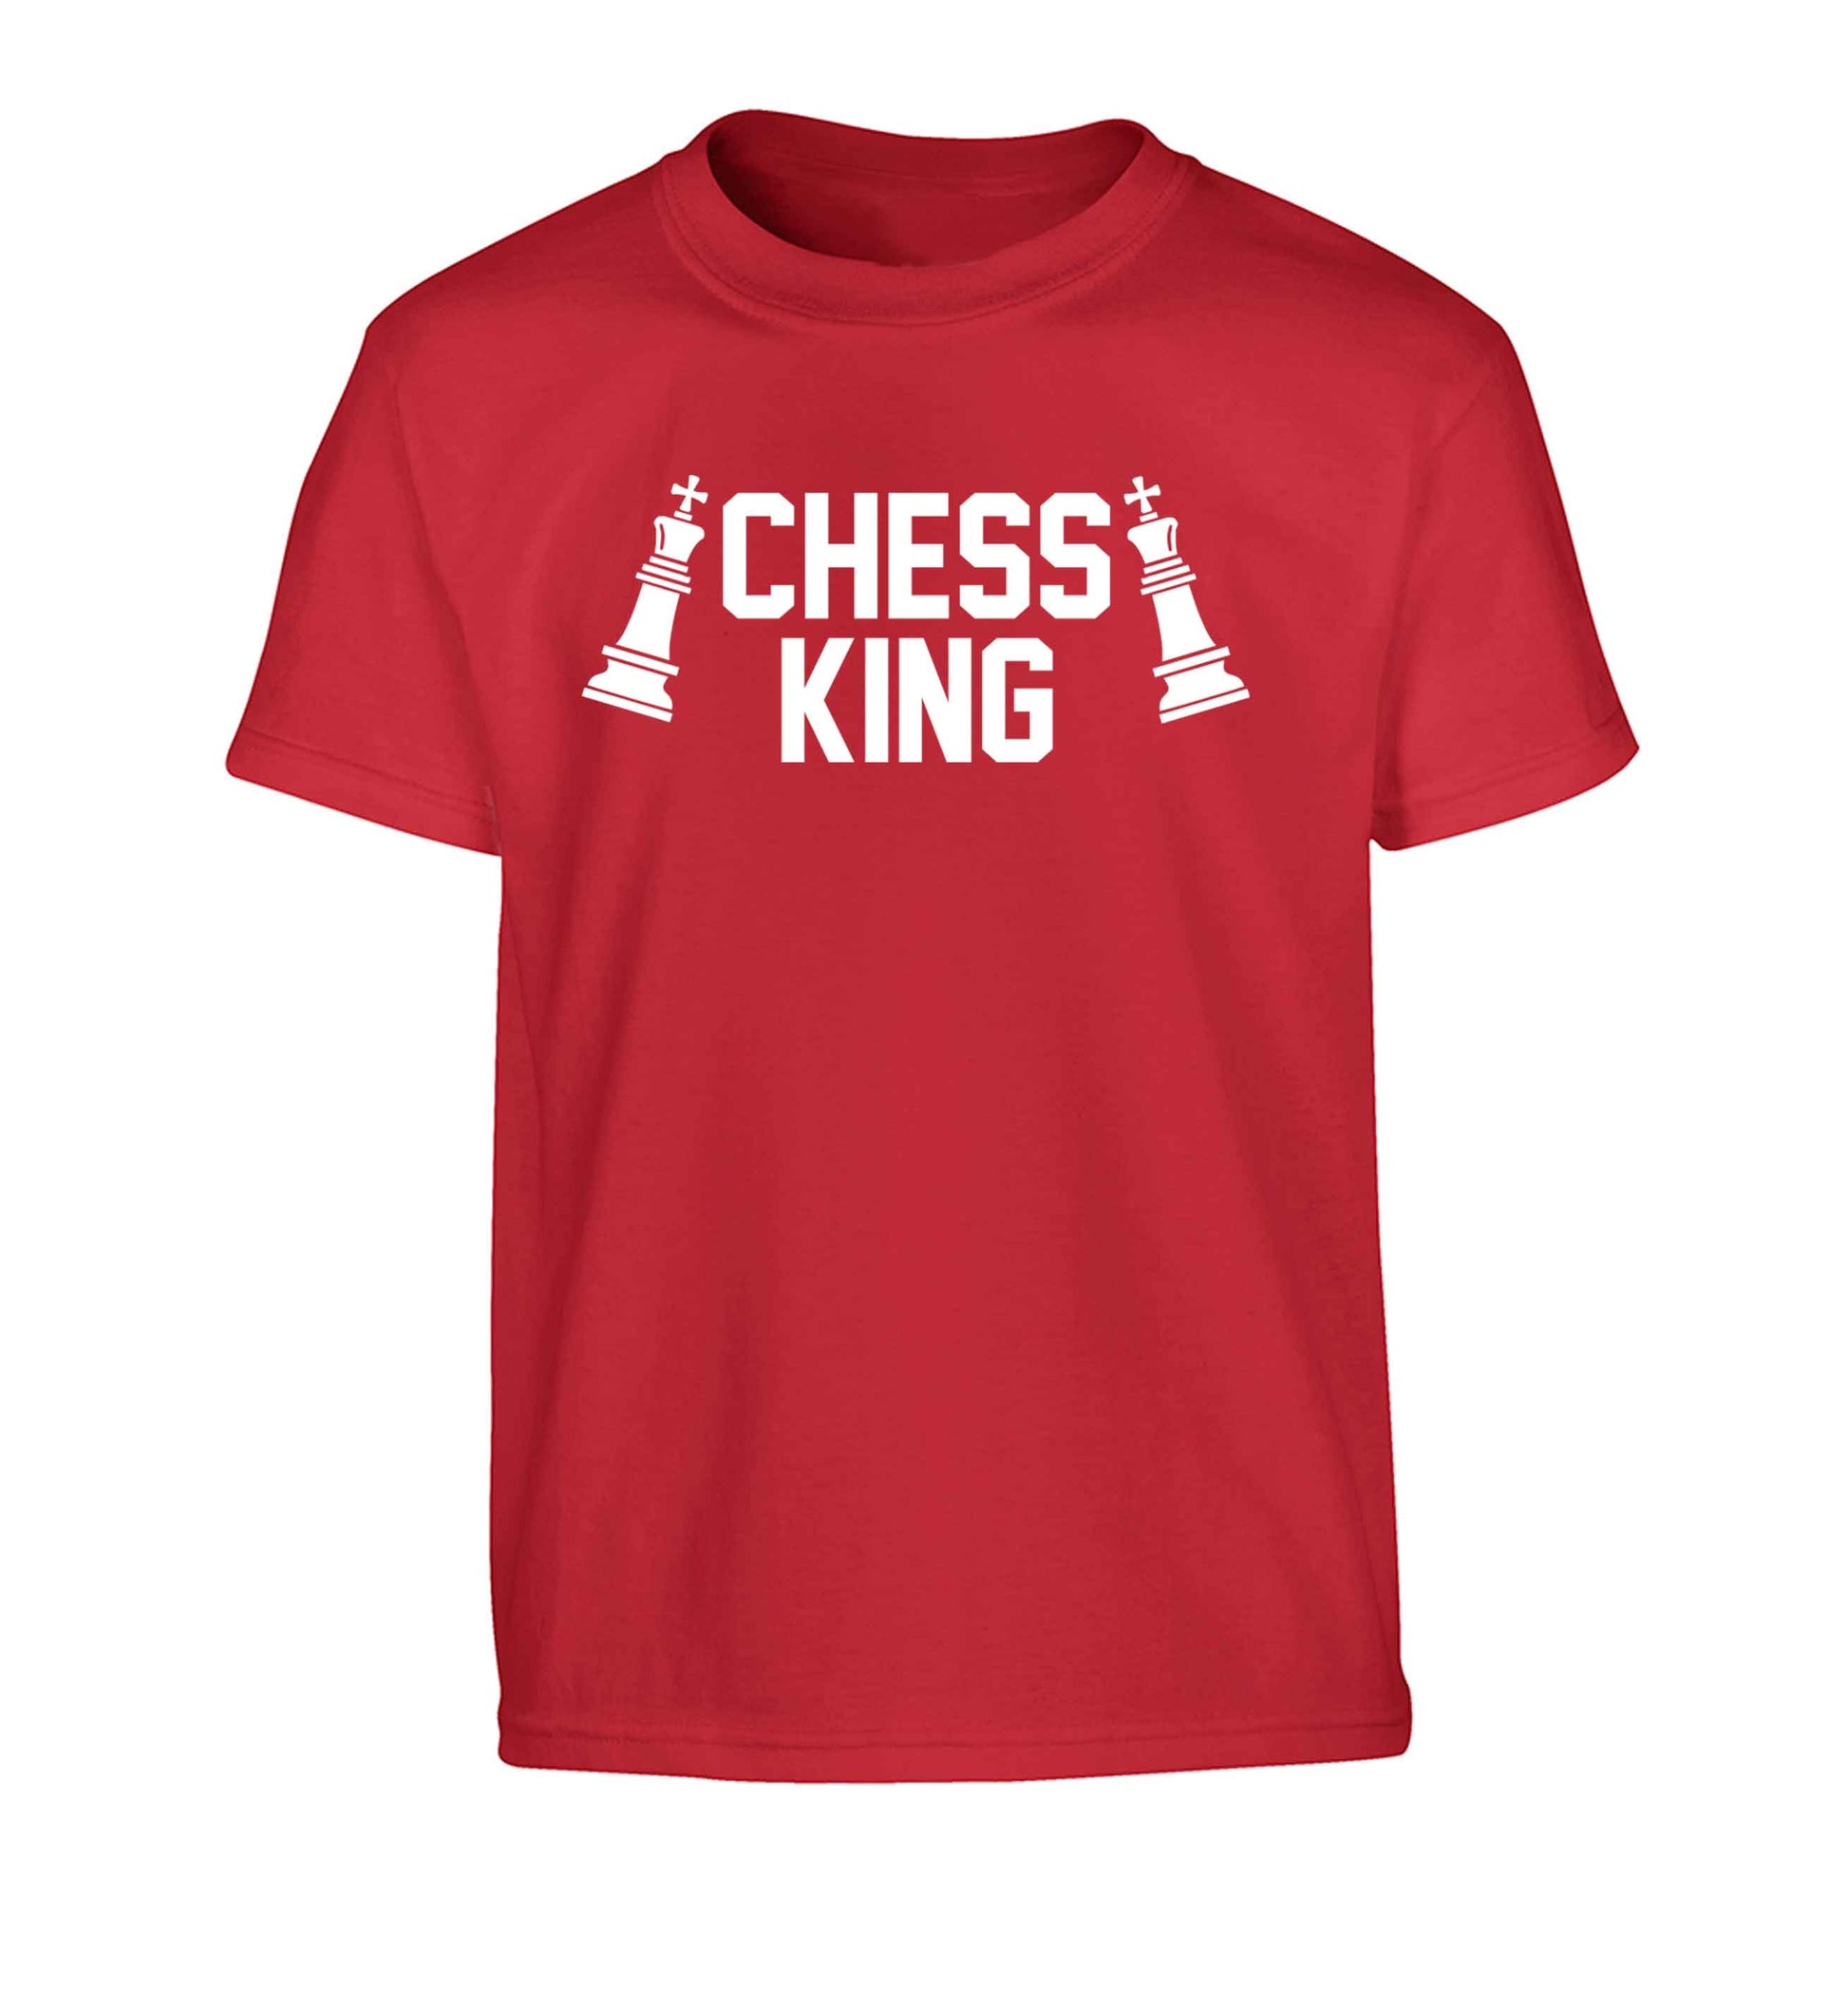 Chess king Children's red Tshirt 12-13 Years